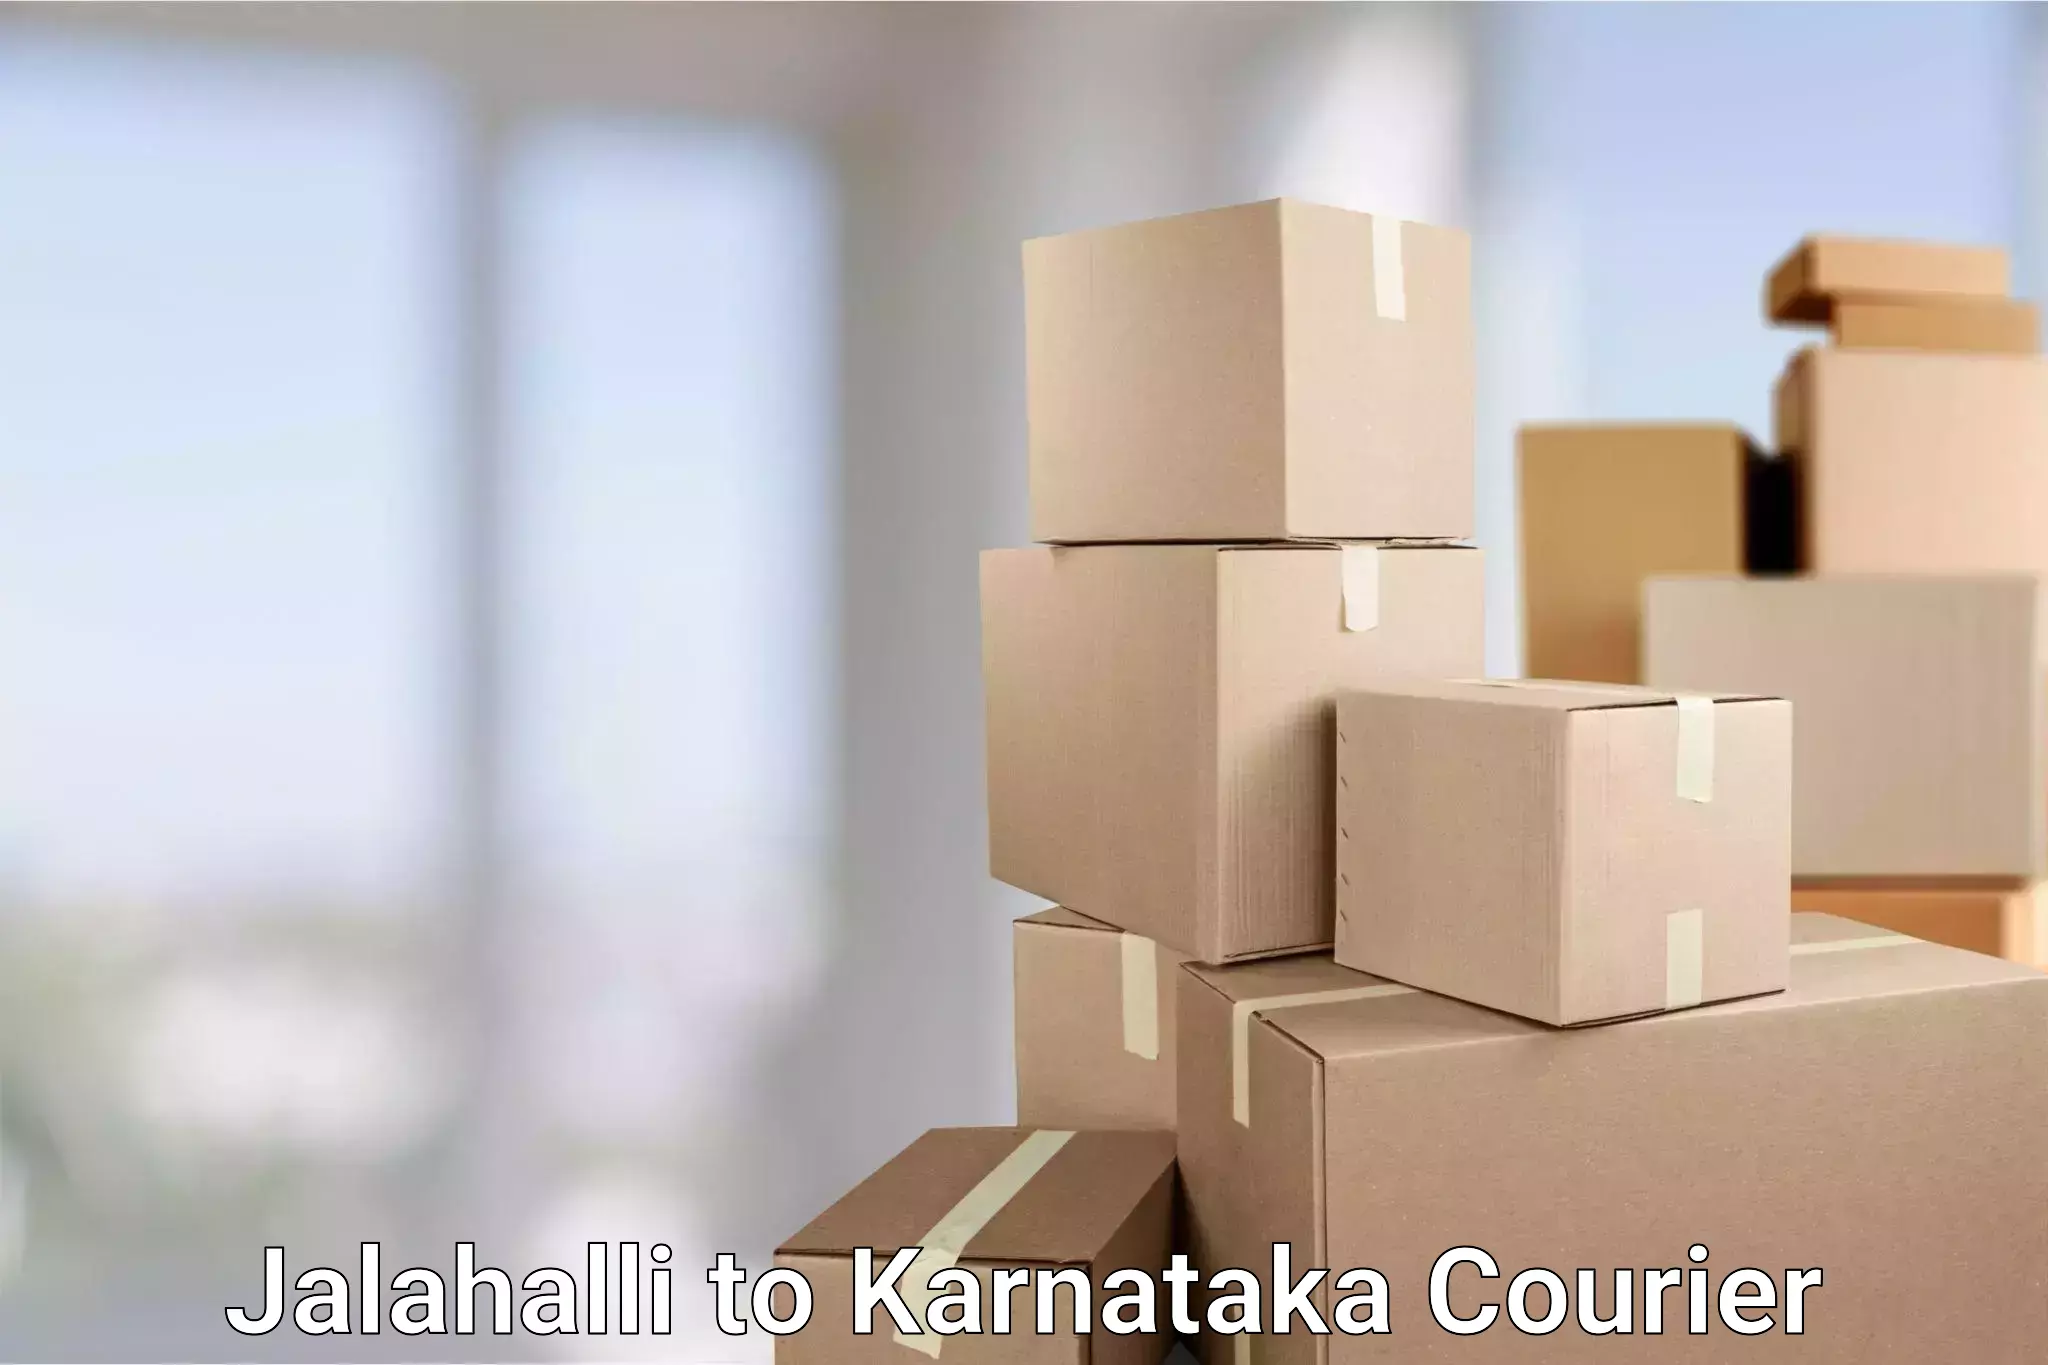 Efficient parcel tracking Jalahalli to Yenepoya Mangalore